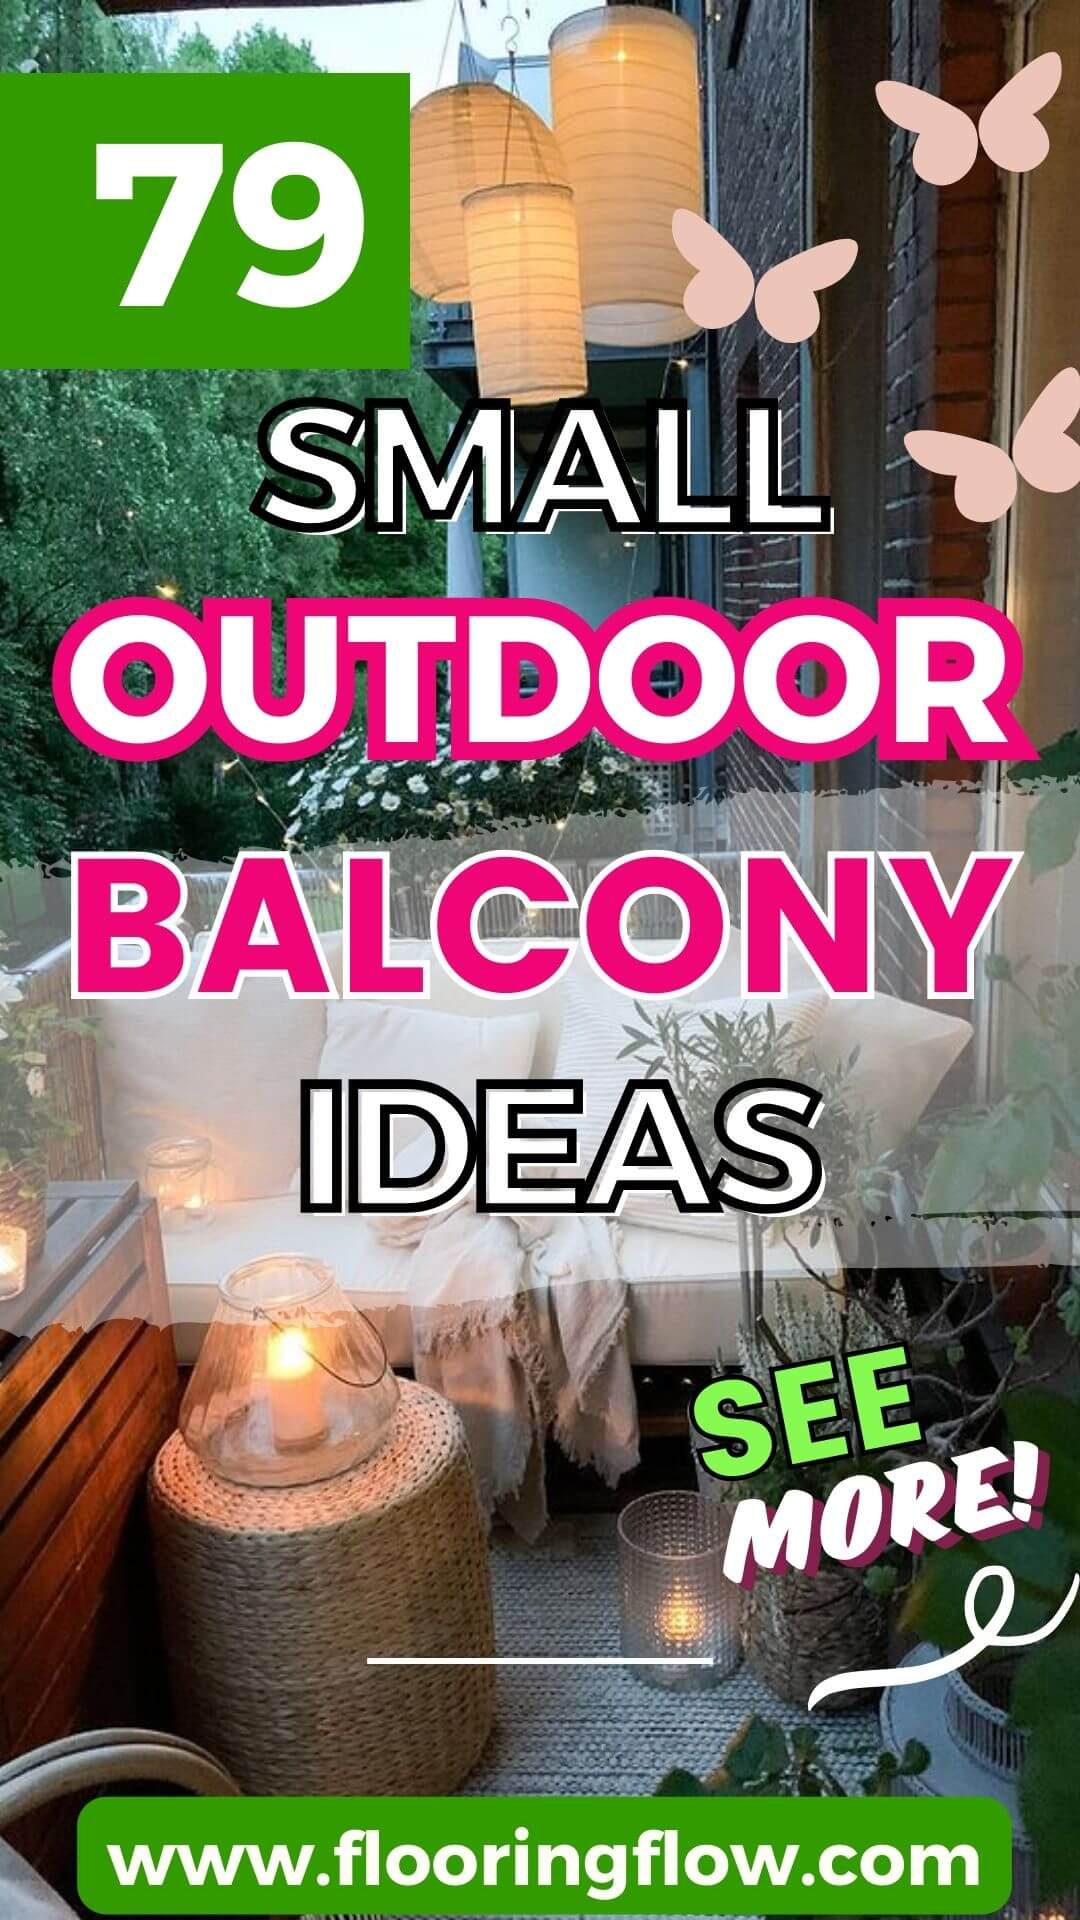 Small Outdoor Balcony Ideas